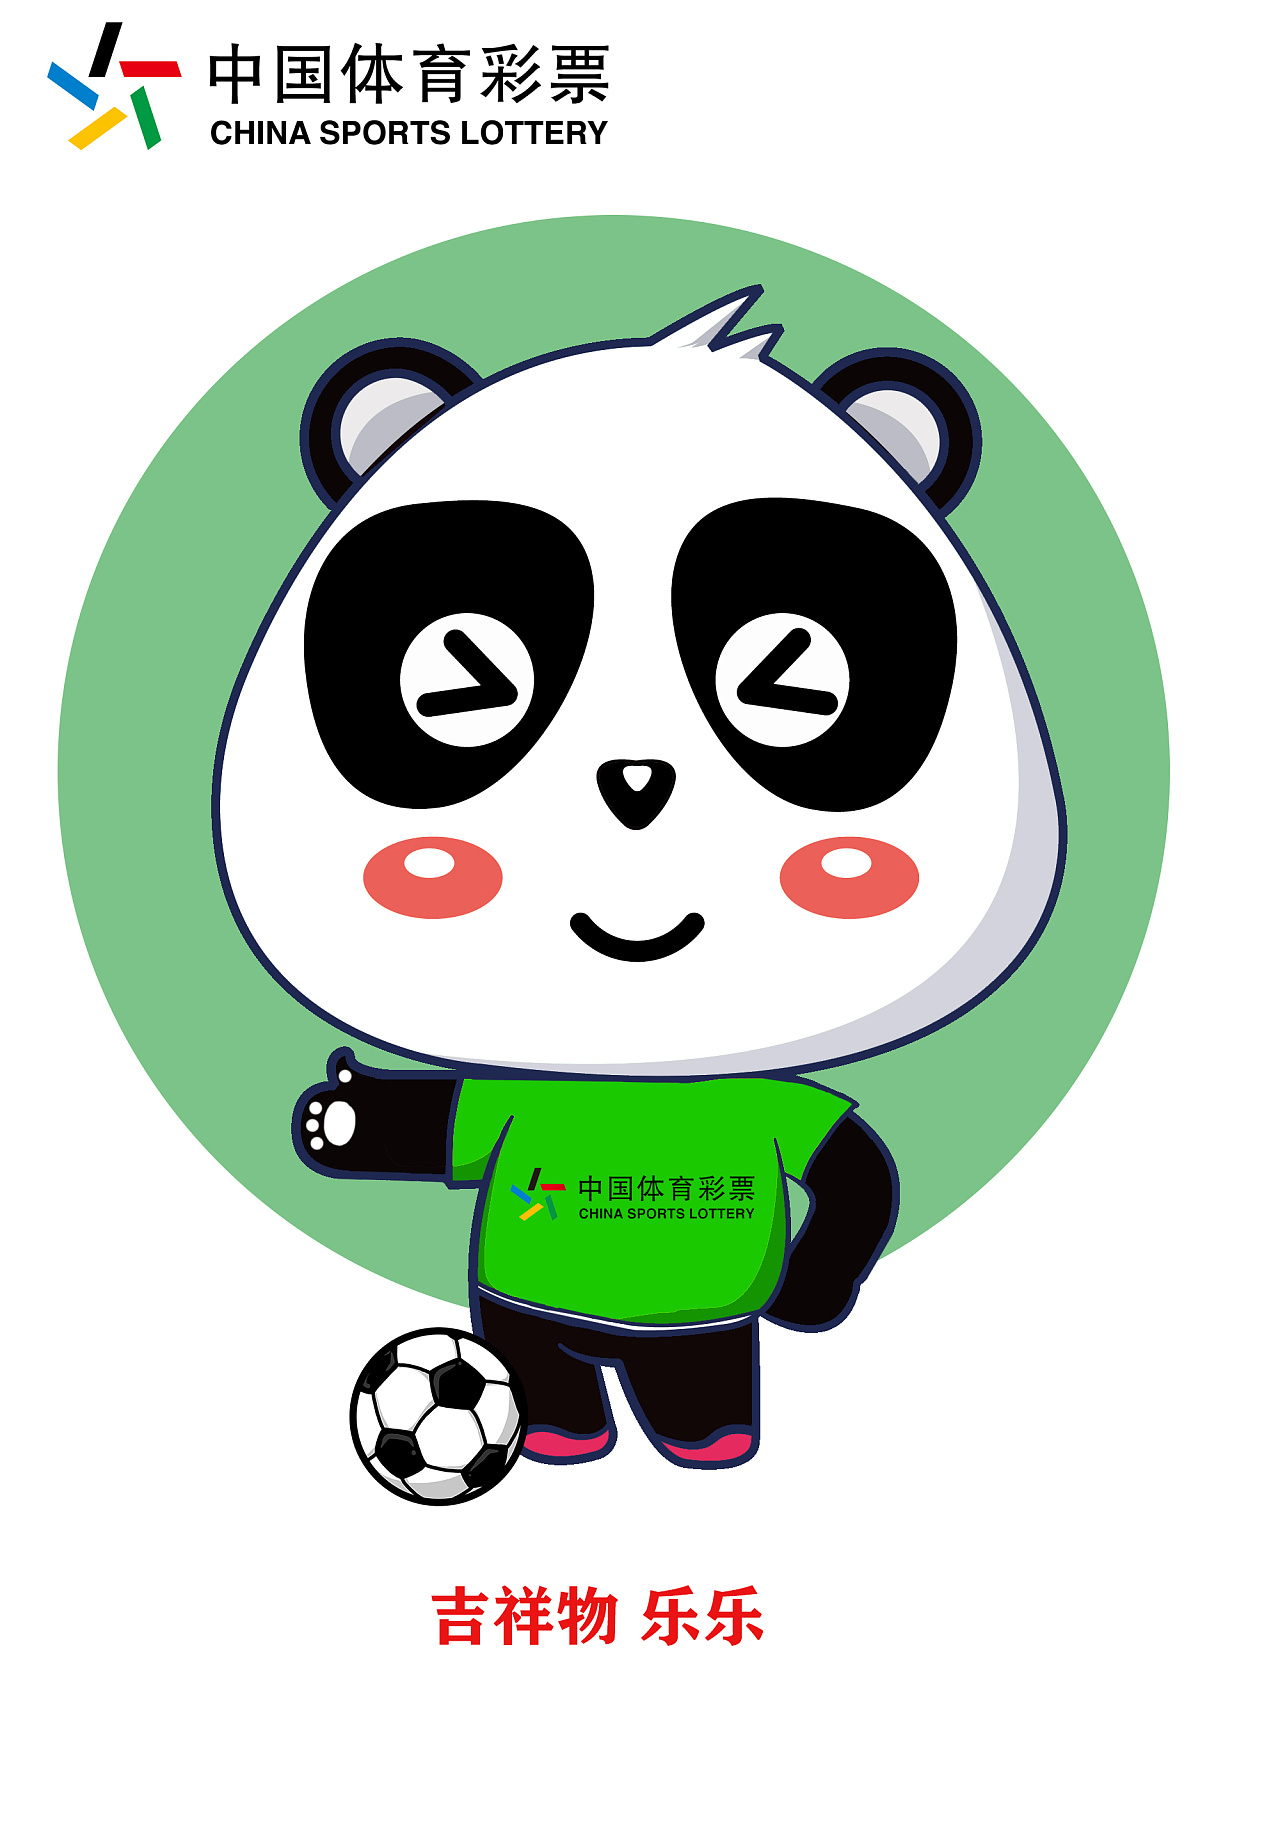 同时,熊猫以其可爱,珍贵等特点,契合了中国体育彩票乐观积极的品牌